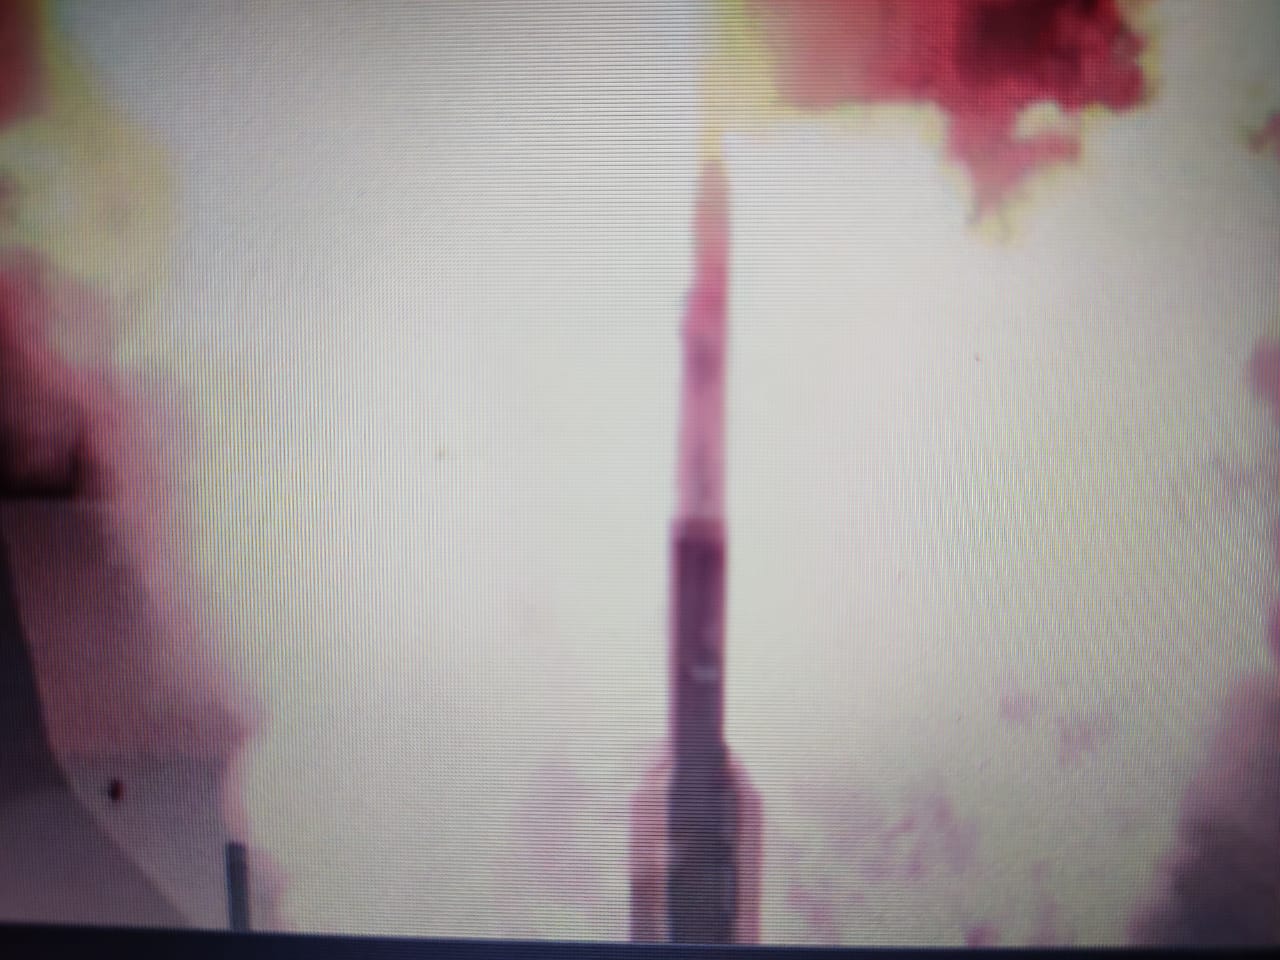 कम दूरी की सतह से हवा में मार करने वाली मिसाइल का सफल परीक्षण